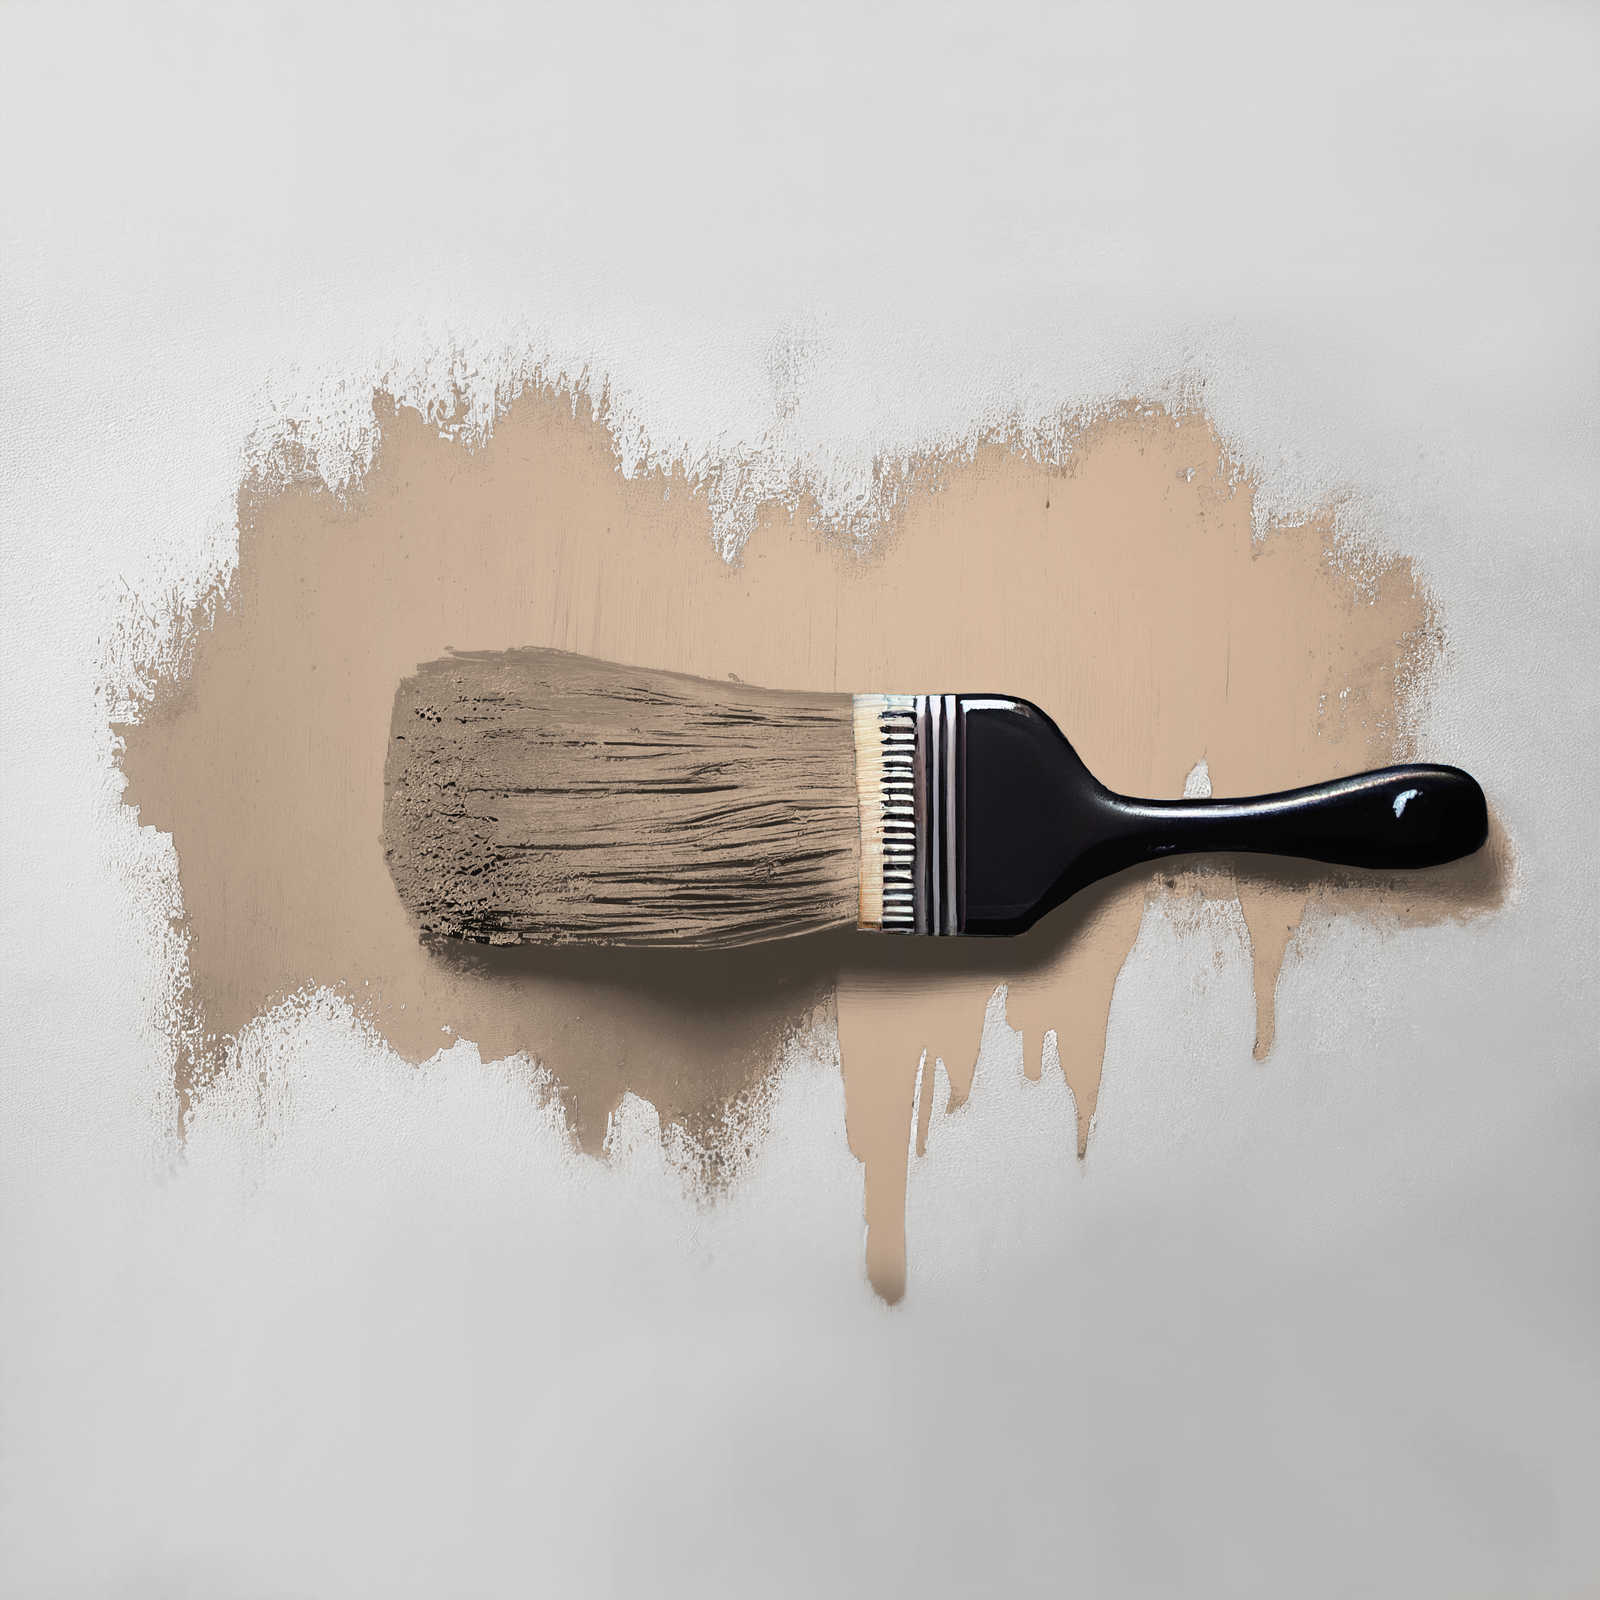             Pintura mural TCK6010 »Latte Macchhiato« en beige natural – 2,5 litro
        